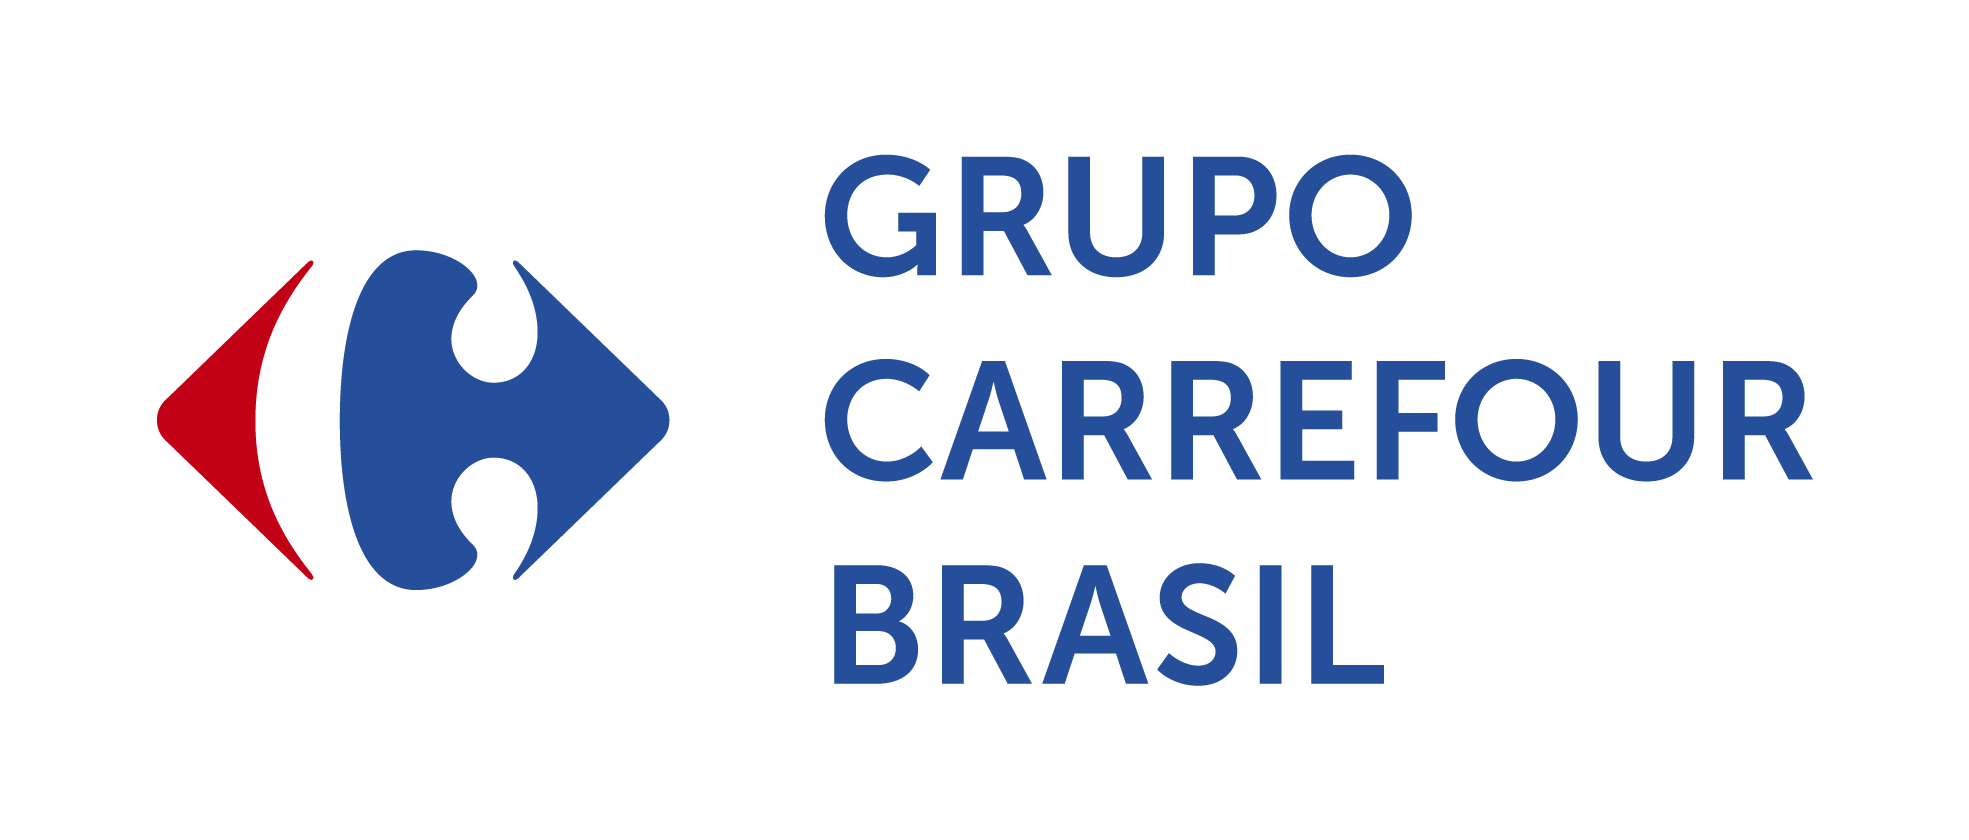 Carrefour Brasil